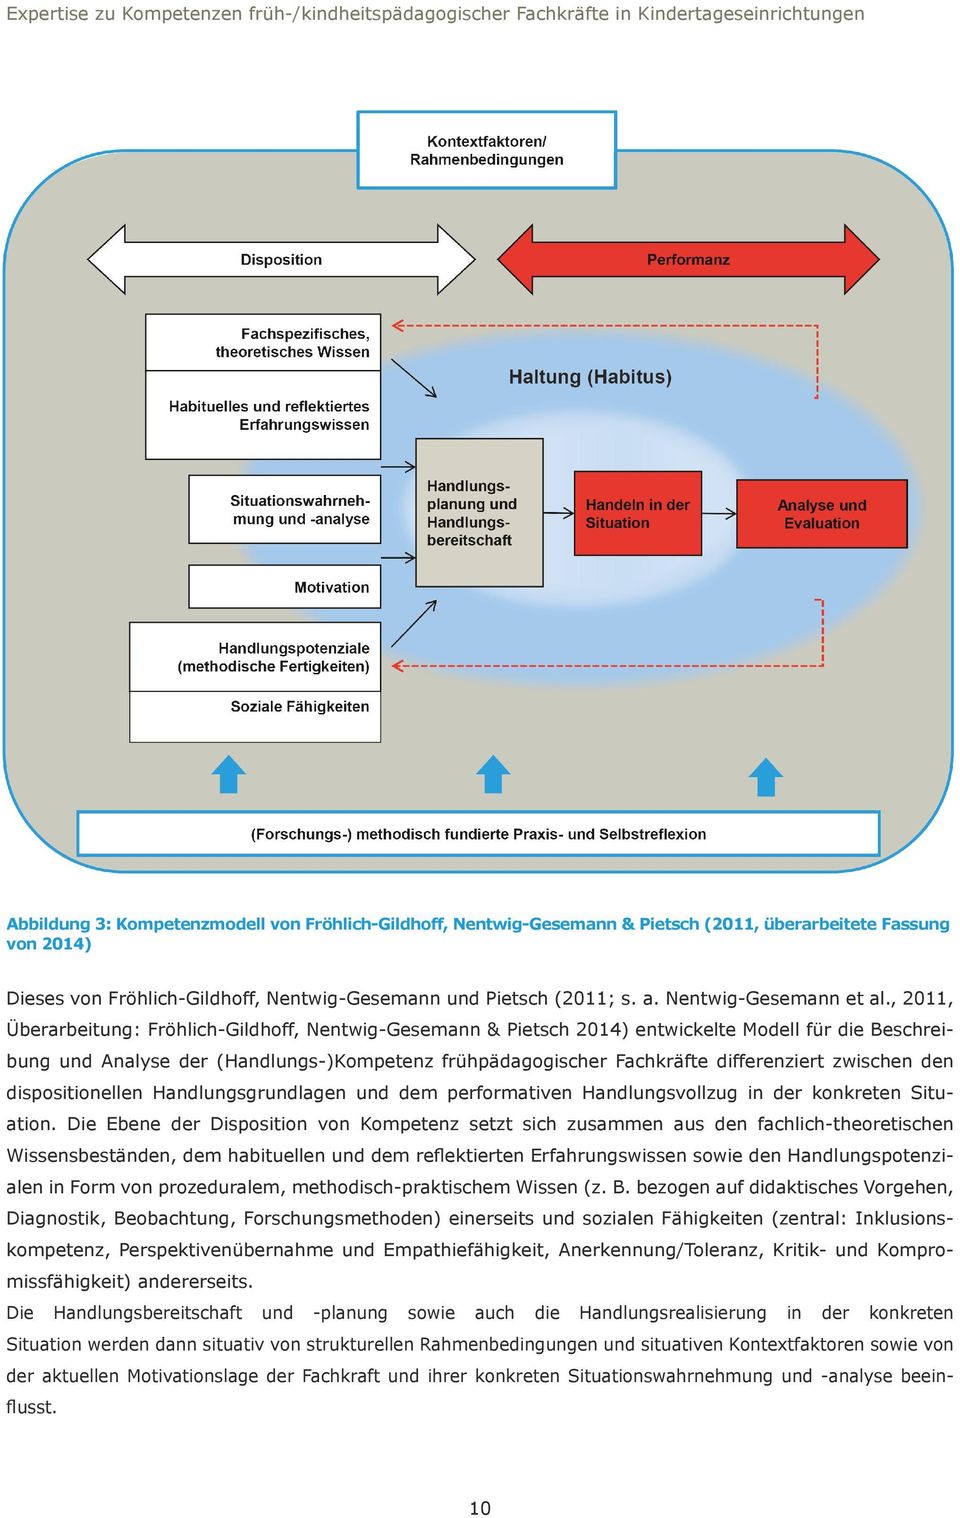 , 2011, Überarbeitung: Fröhlich-Gildhoff, Nentwig-Gesemann & Pietsch 2014) entwickelte Modell für die Beschreibung und Analyse der (s-)kompetenz frühpädagogischer Fachkräfte differenziert zwischen